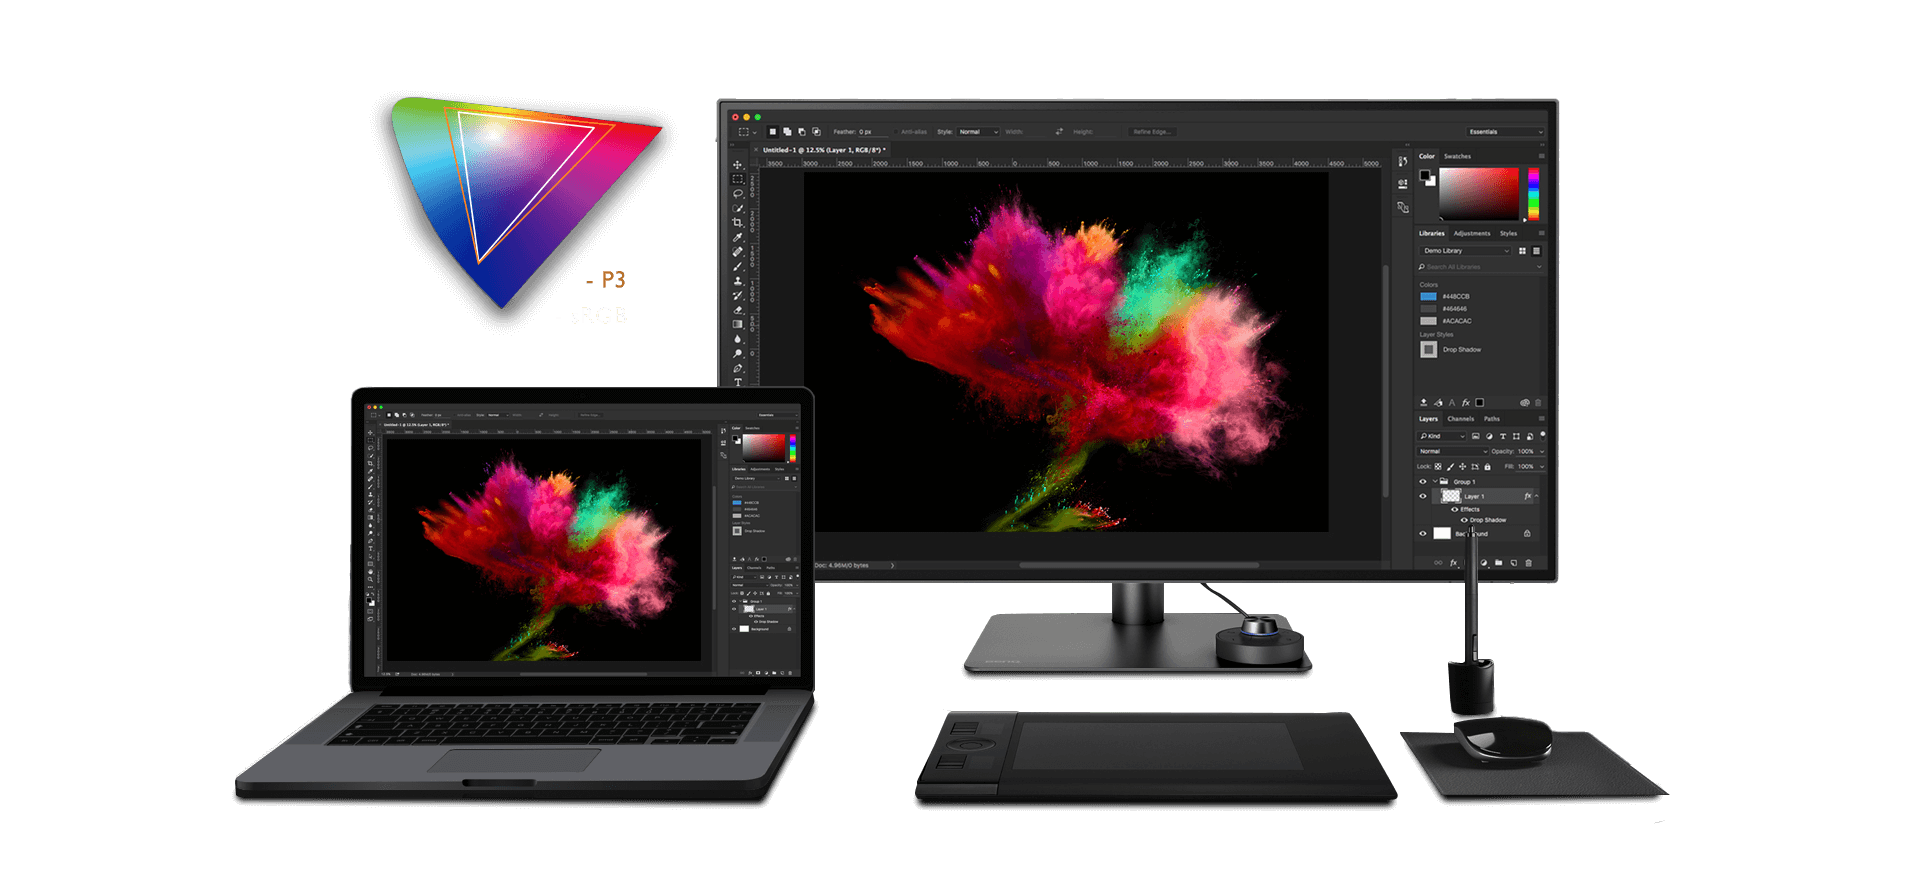 Neue Farbstandards, wie Display P3 und DCI-P3 werden vom PD2720U farbverbindlich reproduziert. Zudem deckt der PD2720U die Farbräume DCI-P3 zu 96%, sRGB und Adobe RGB zu 100% sowie Rec.709 ab.